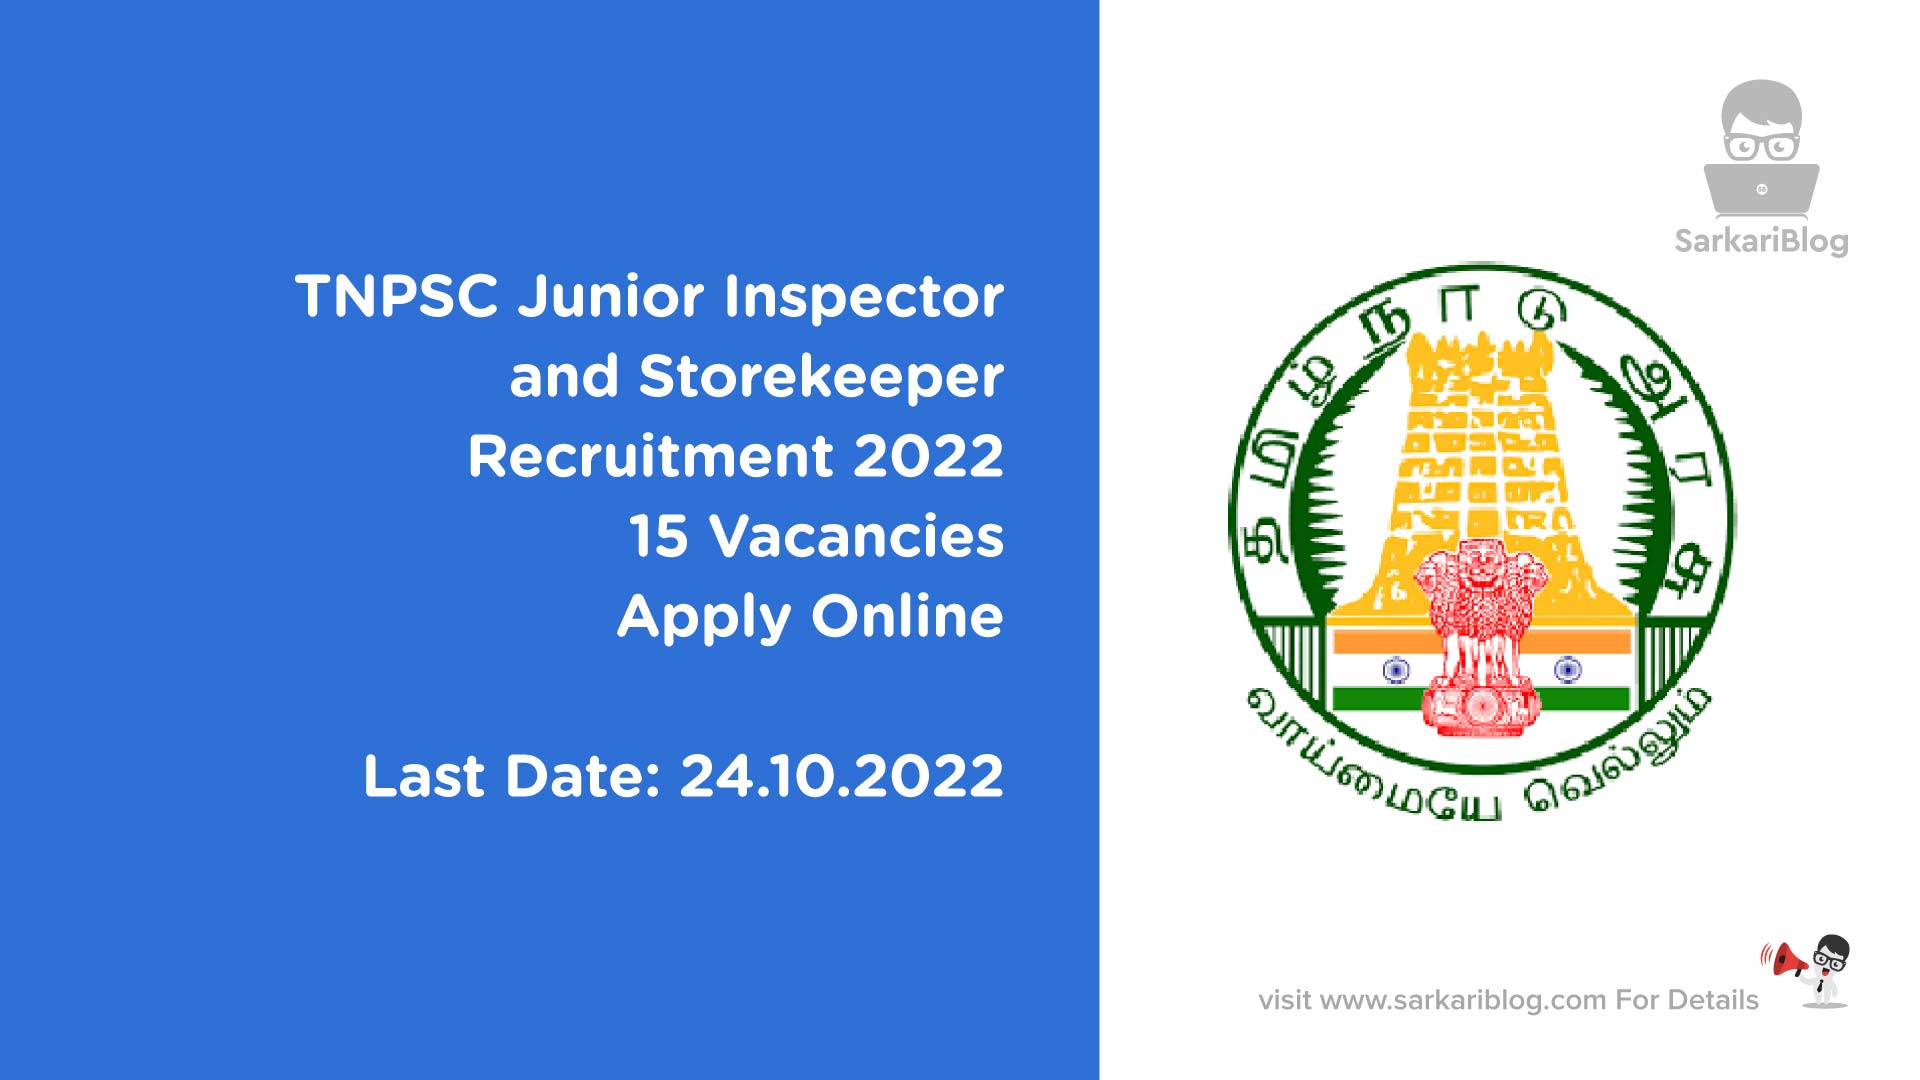 TNPSC Junior Inspector and Storekeeper Recruitment 2022